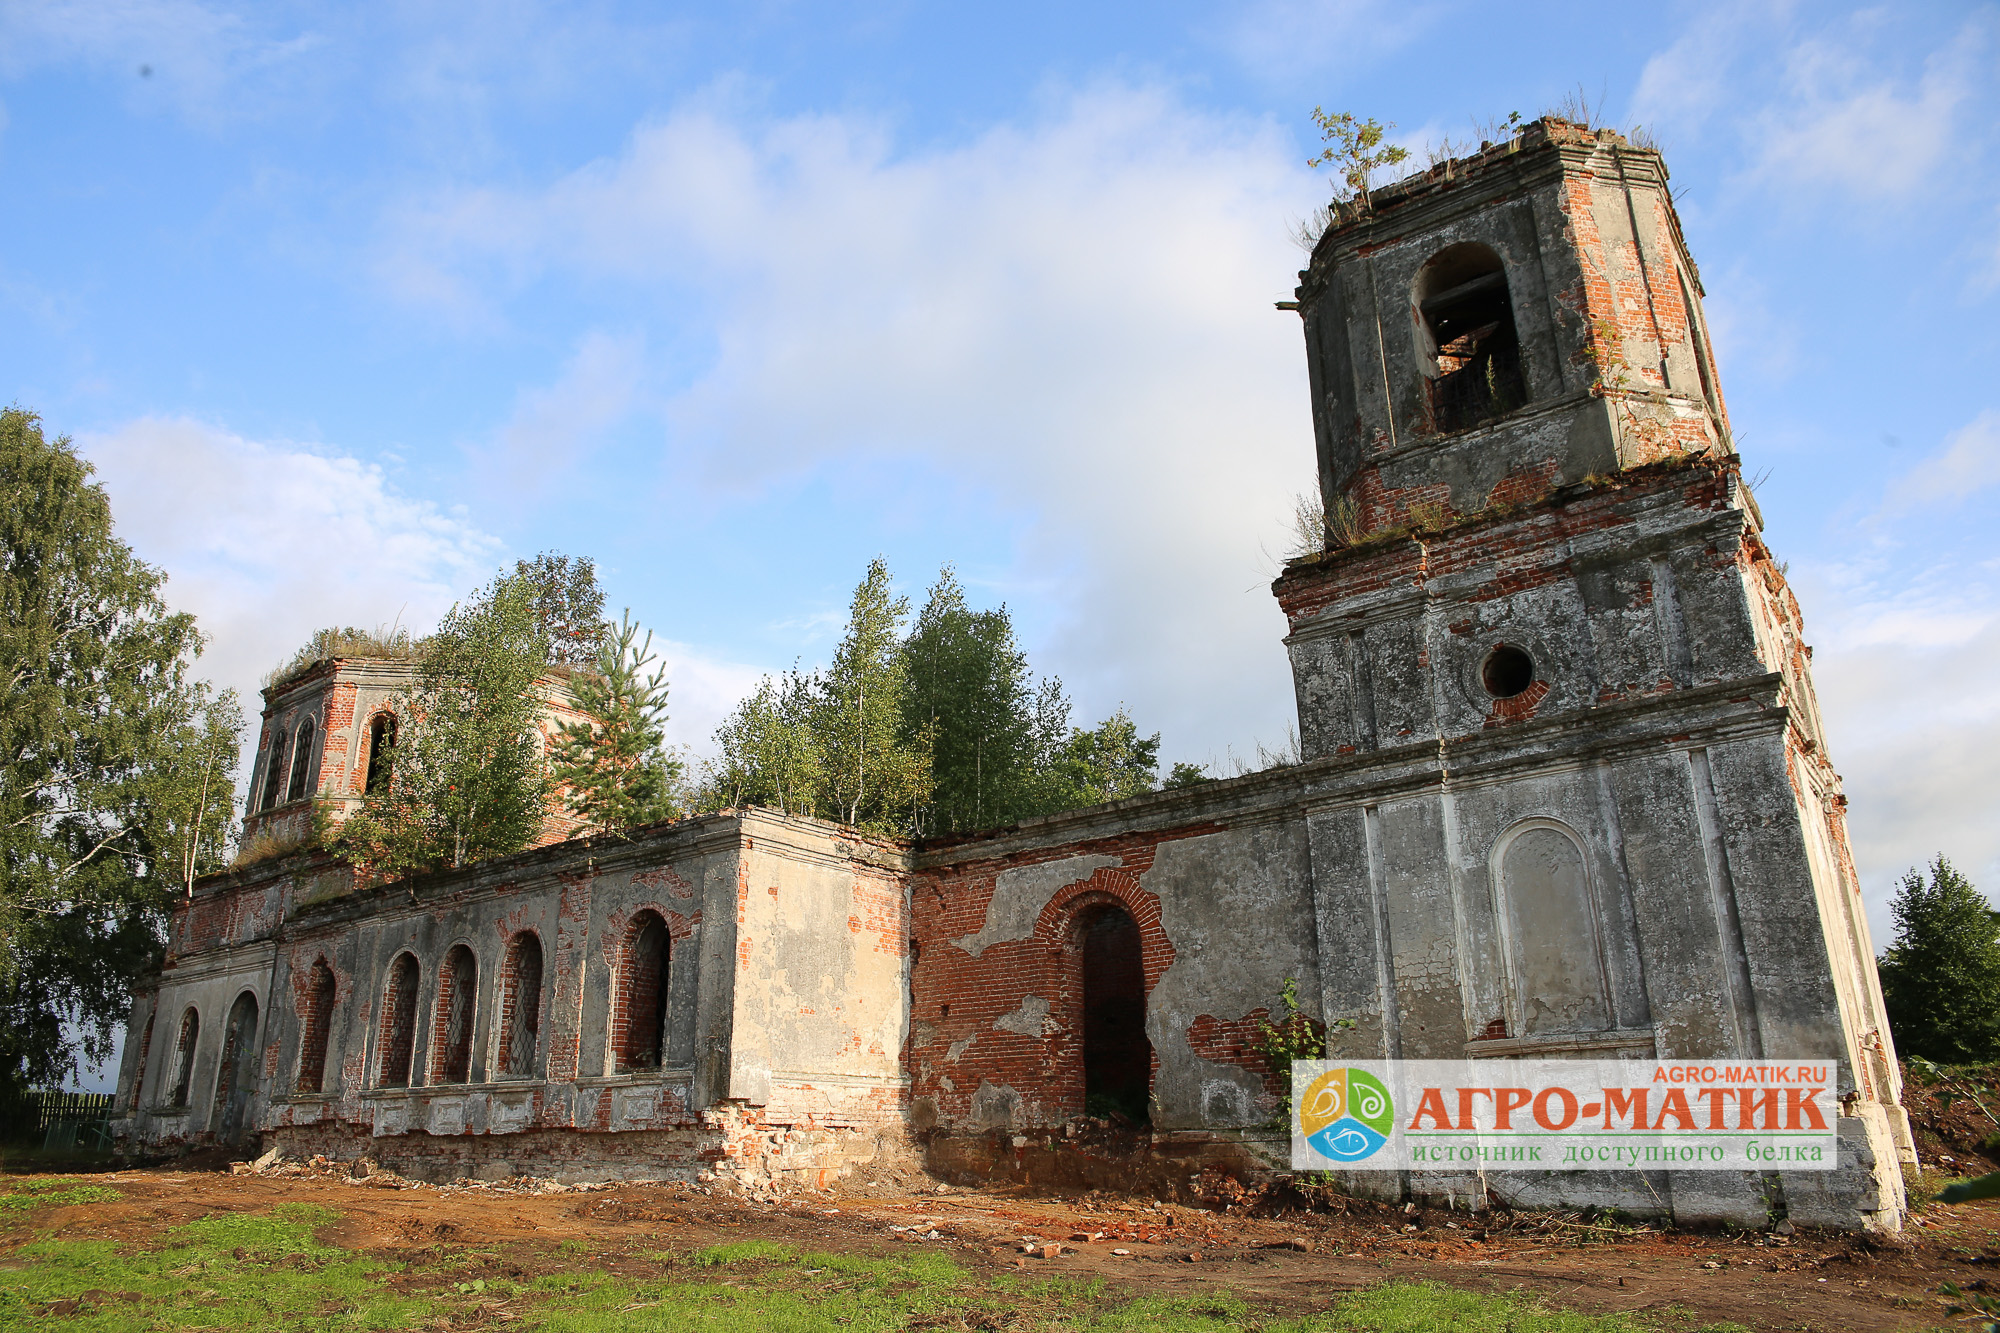 «Агро-Матик» стал инициатором восстановления храма в селе Досчатое / Агро-Матик #2